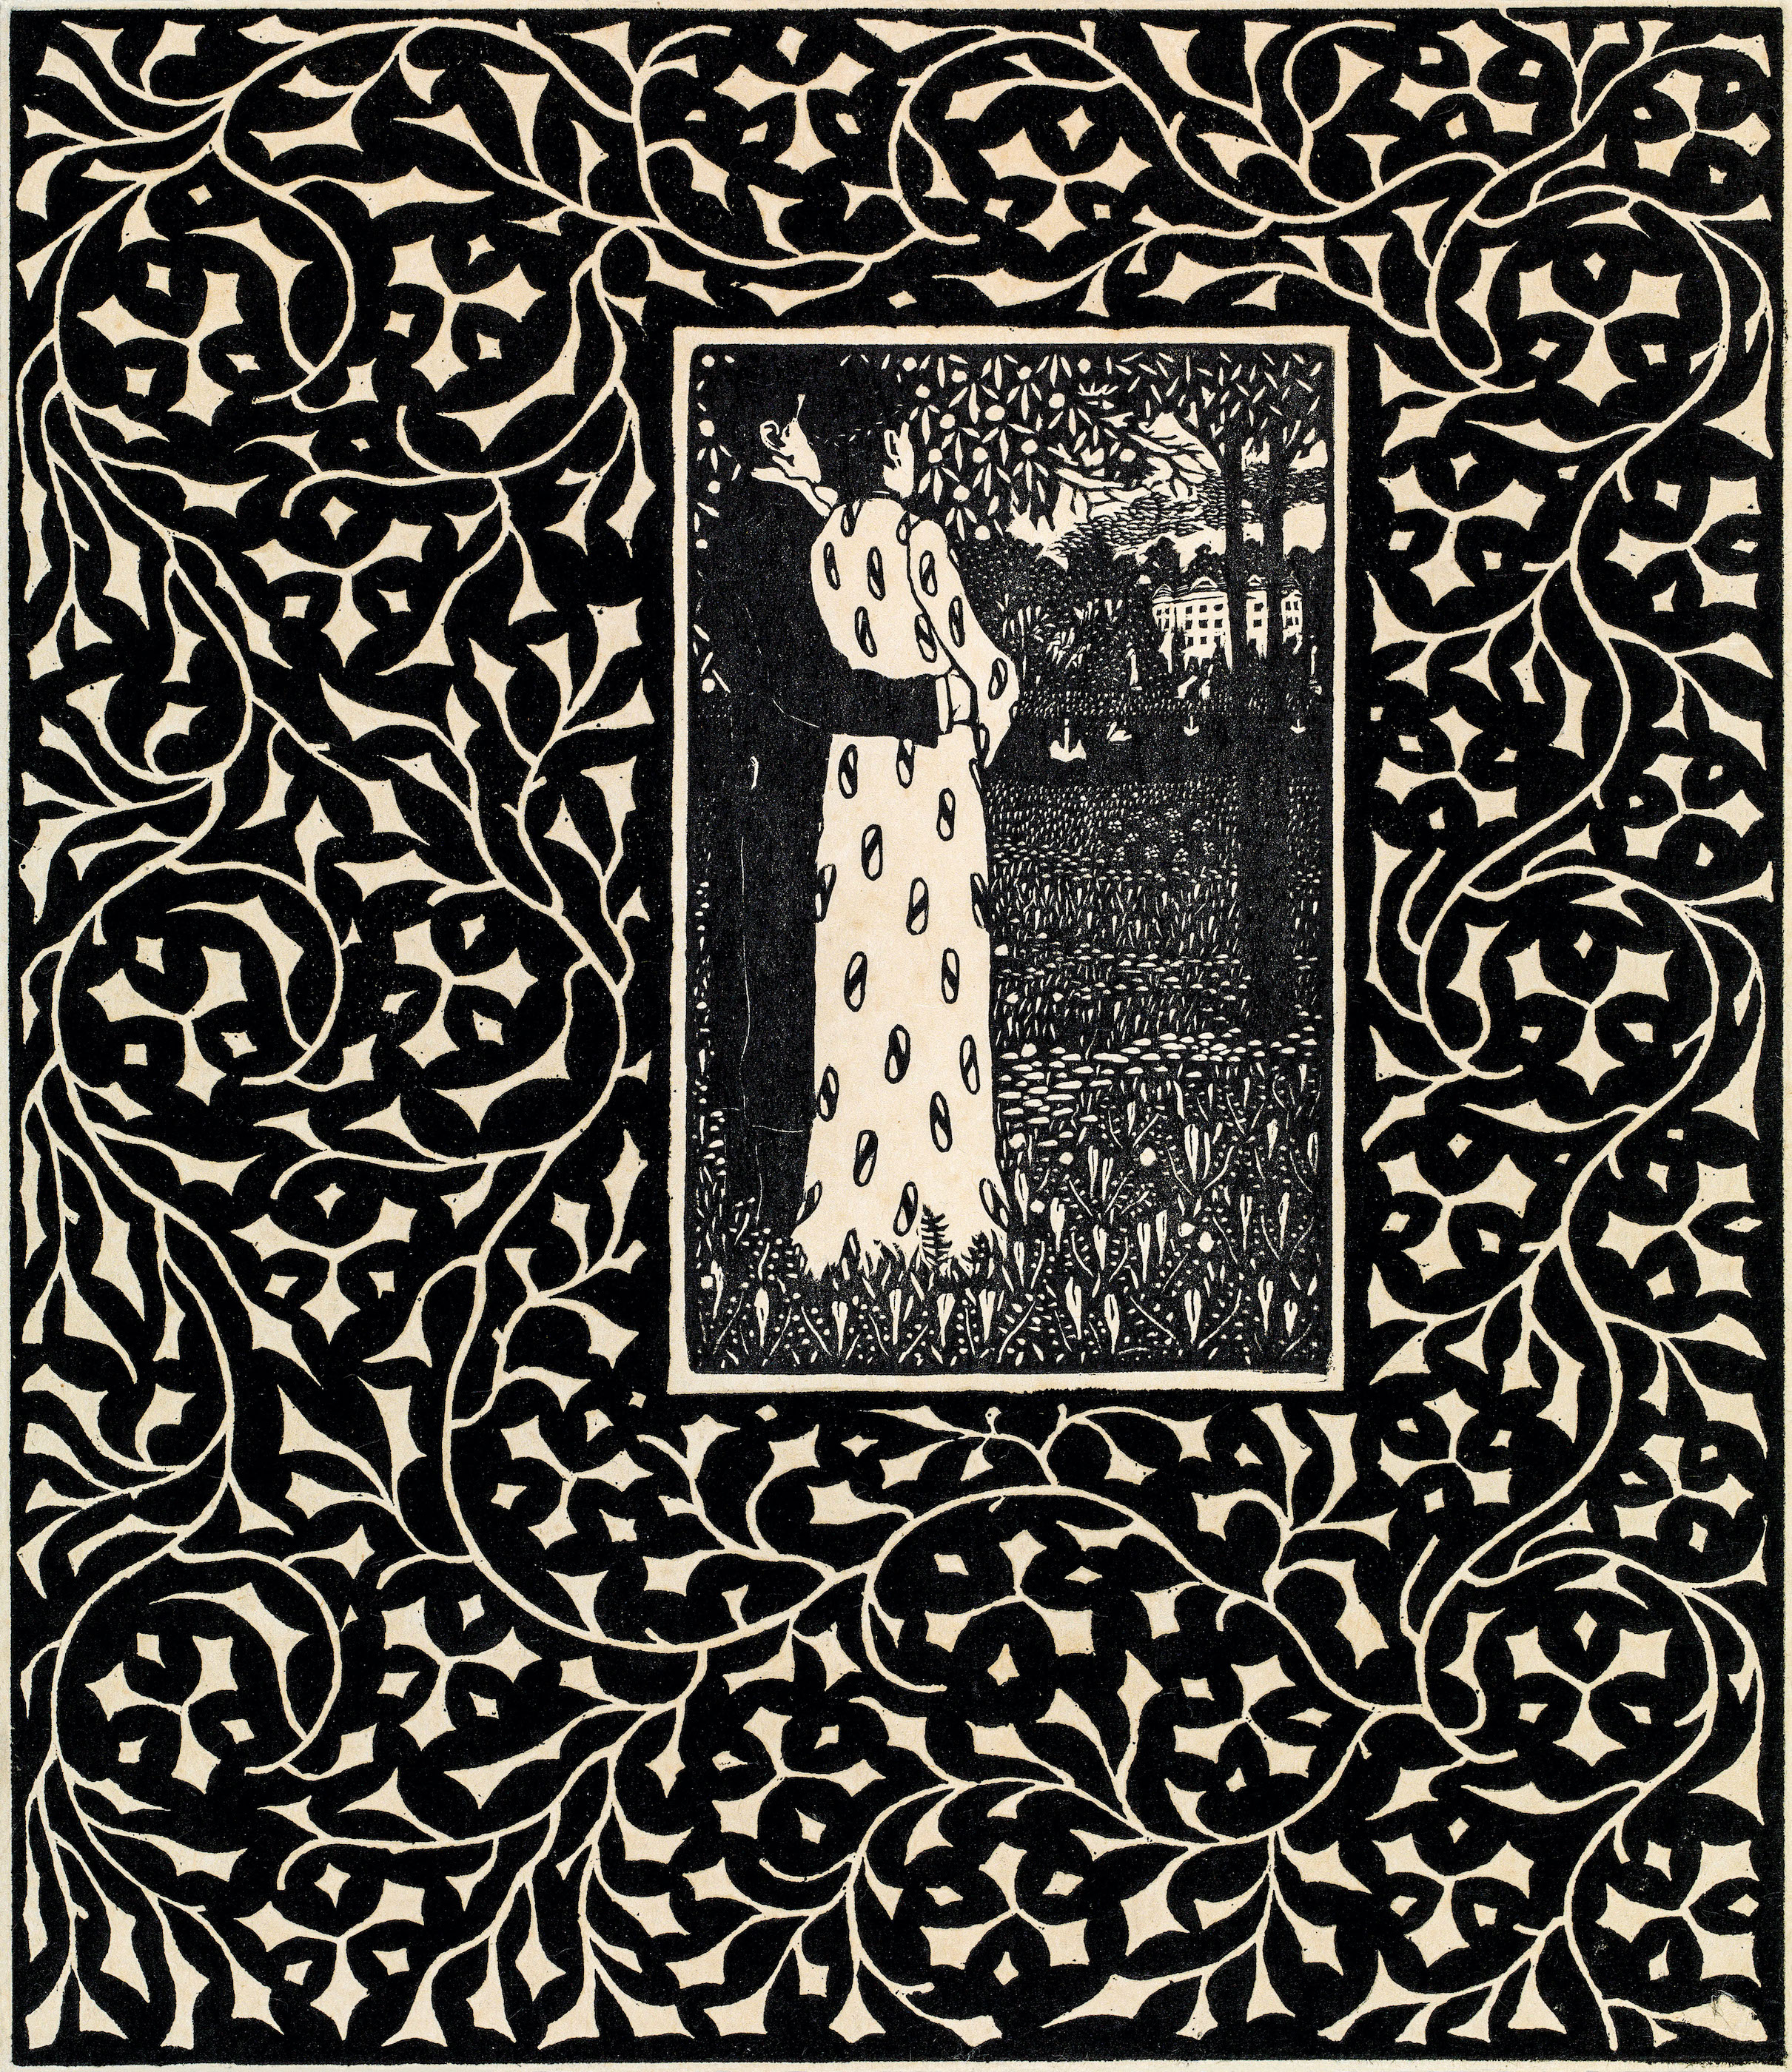 Die Vier Jahreszeiten 1906 by Carl Krenek - 1906 - 26,6 x 22,1 cm Private Sammlung